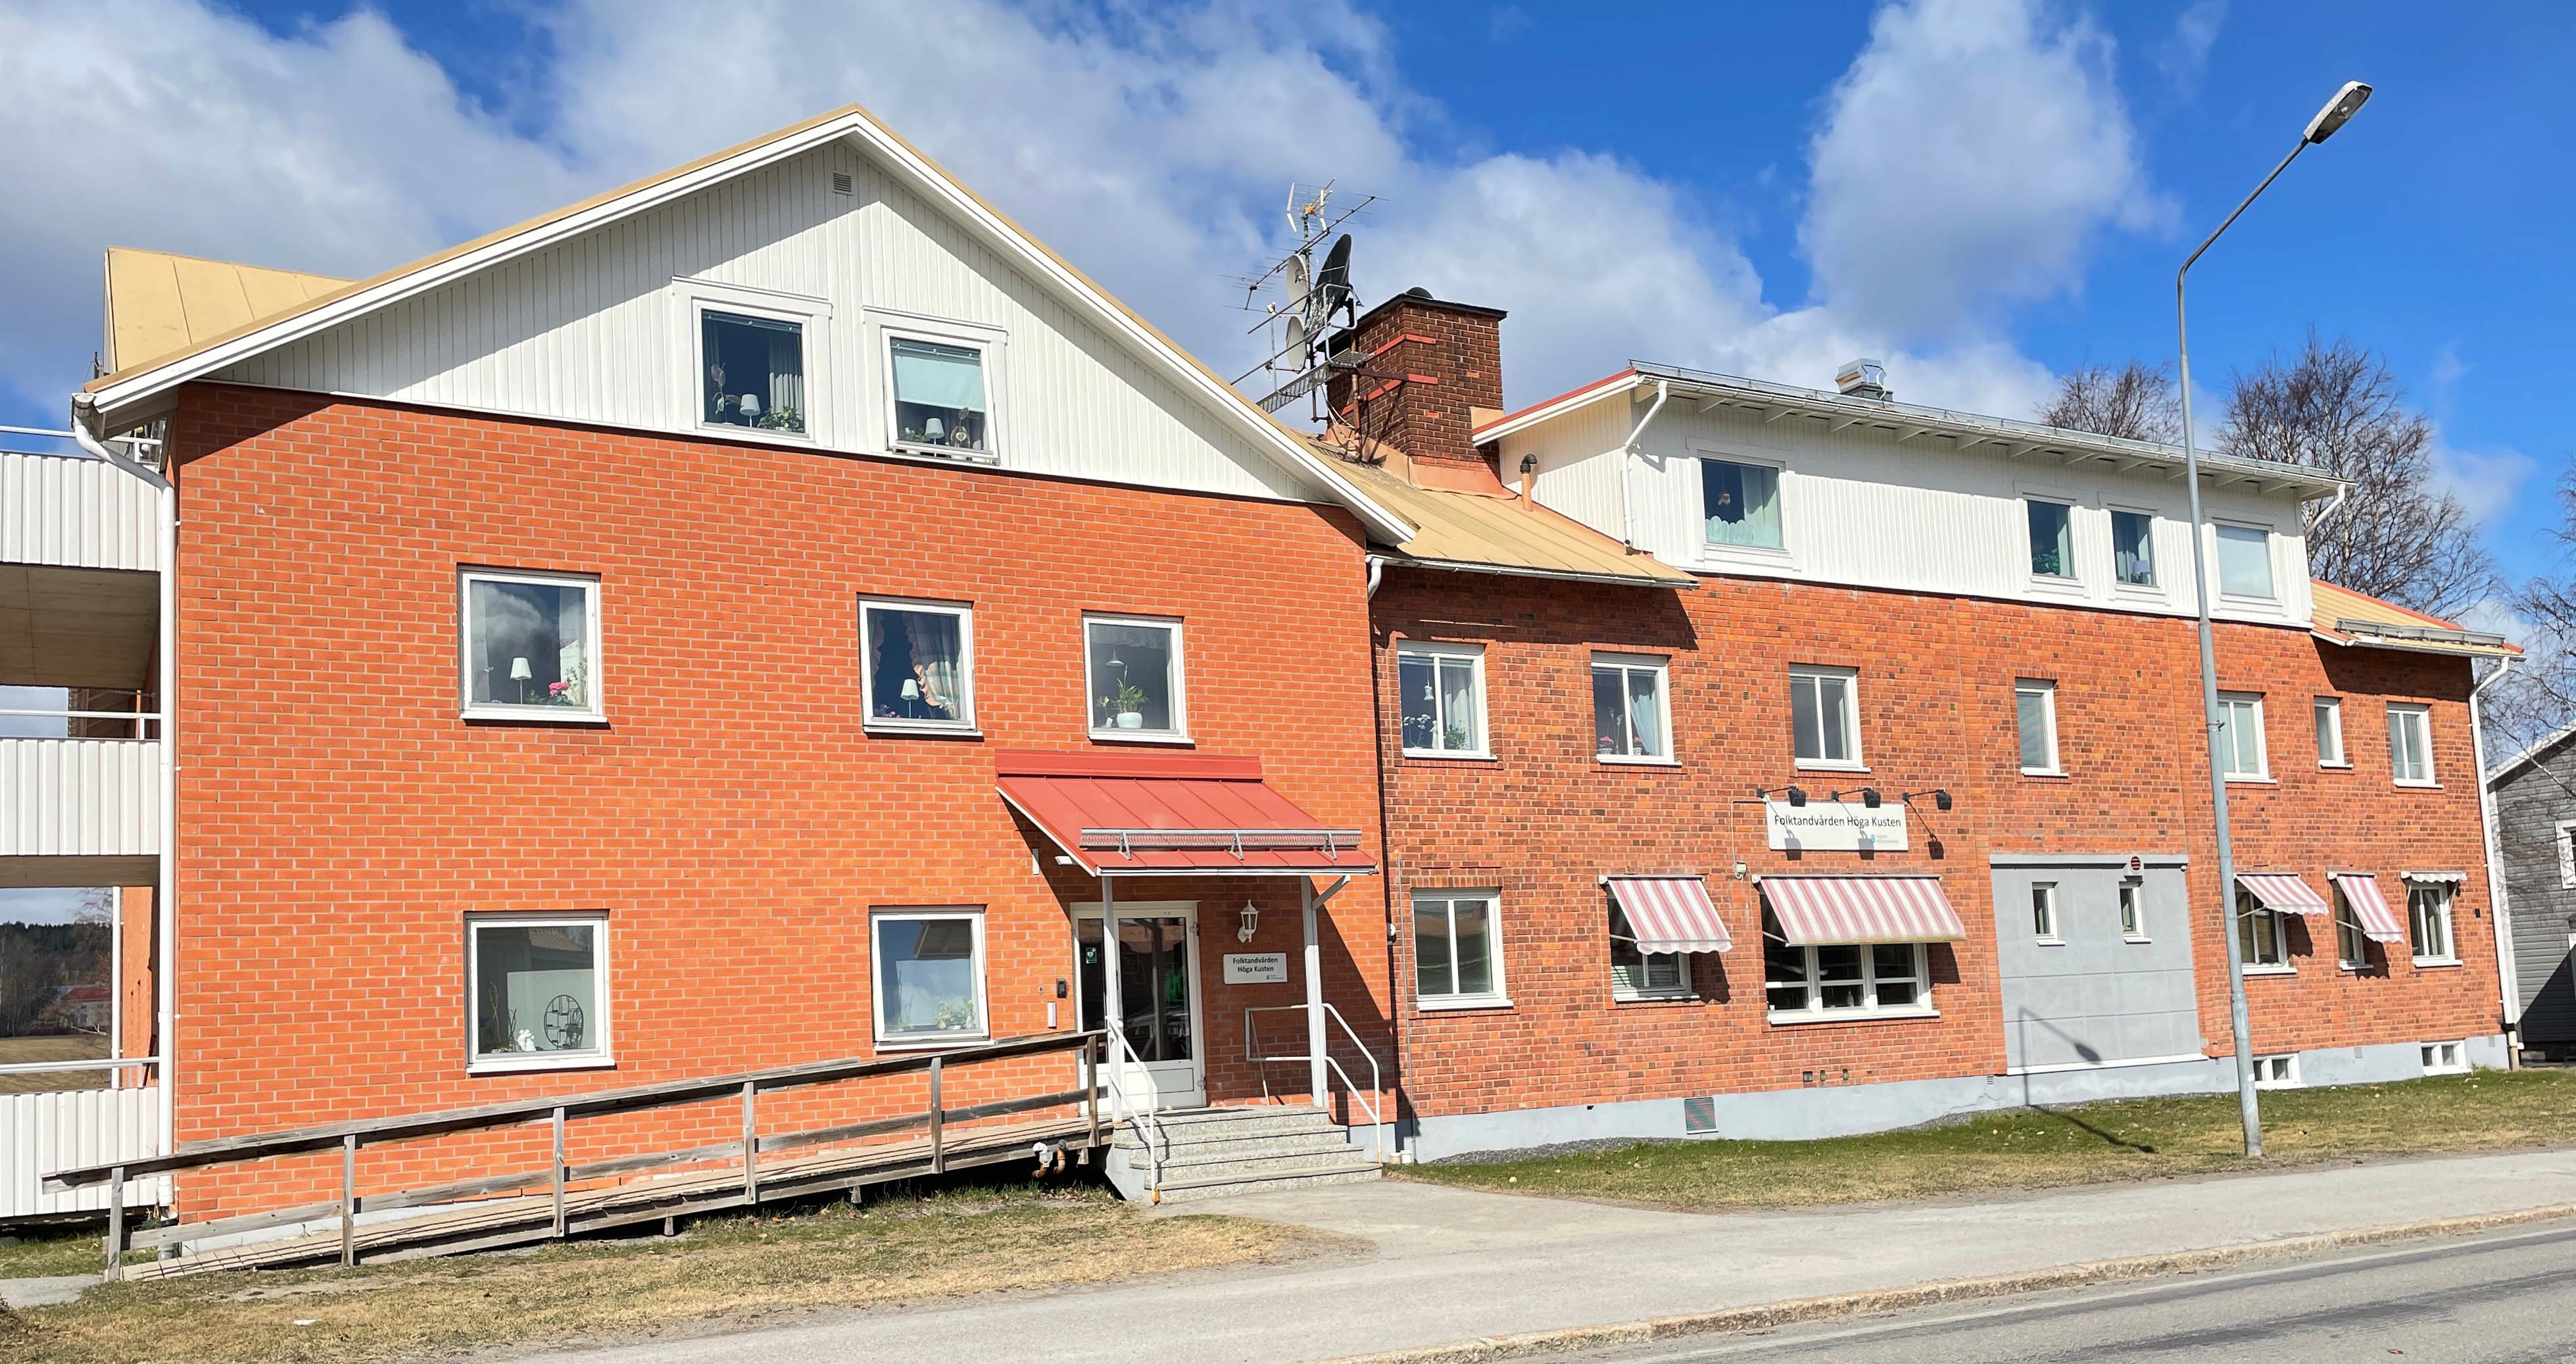 Folktandvårdens klinik Höga kusten i Ullånger ska avvecklas enligt ett beslut i regionfullmäktige.